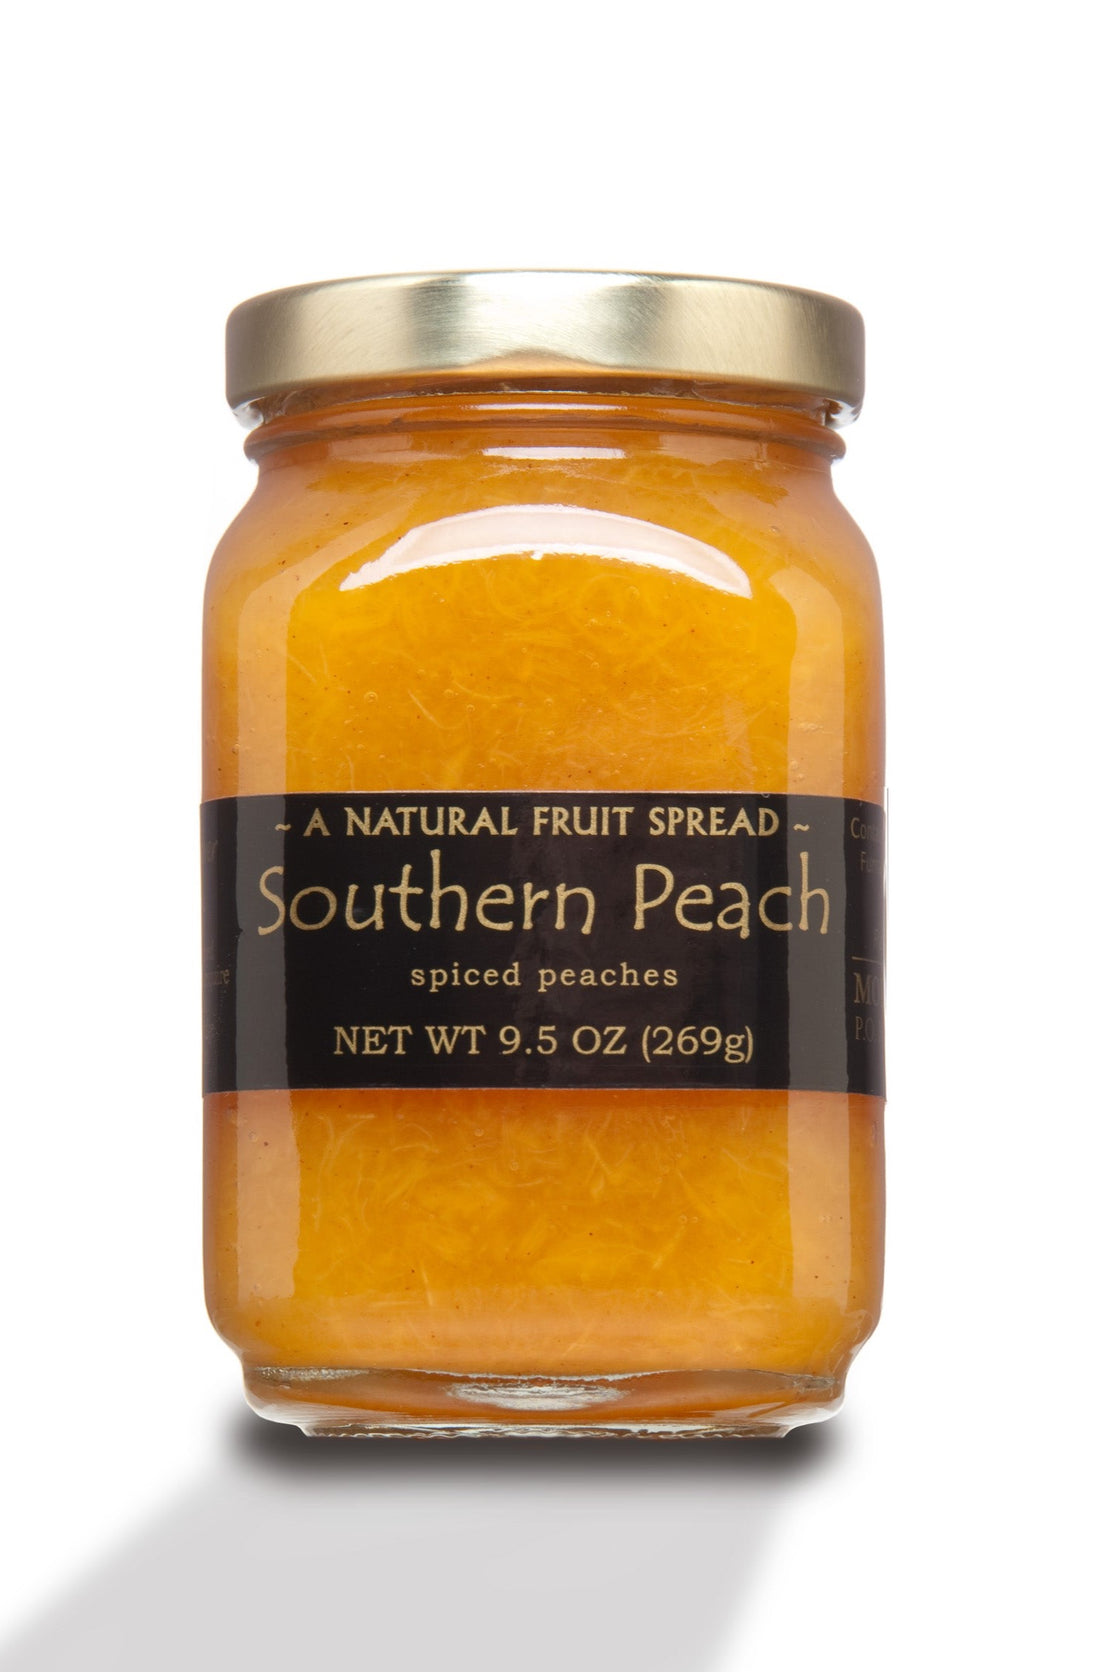 Mountain Fruit Company Southern Peach - Peach Jam spiced with Cinnamon